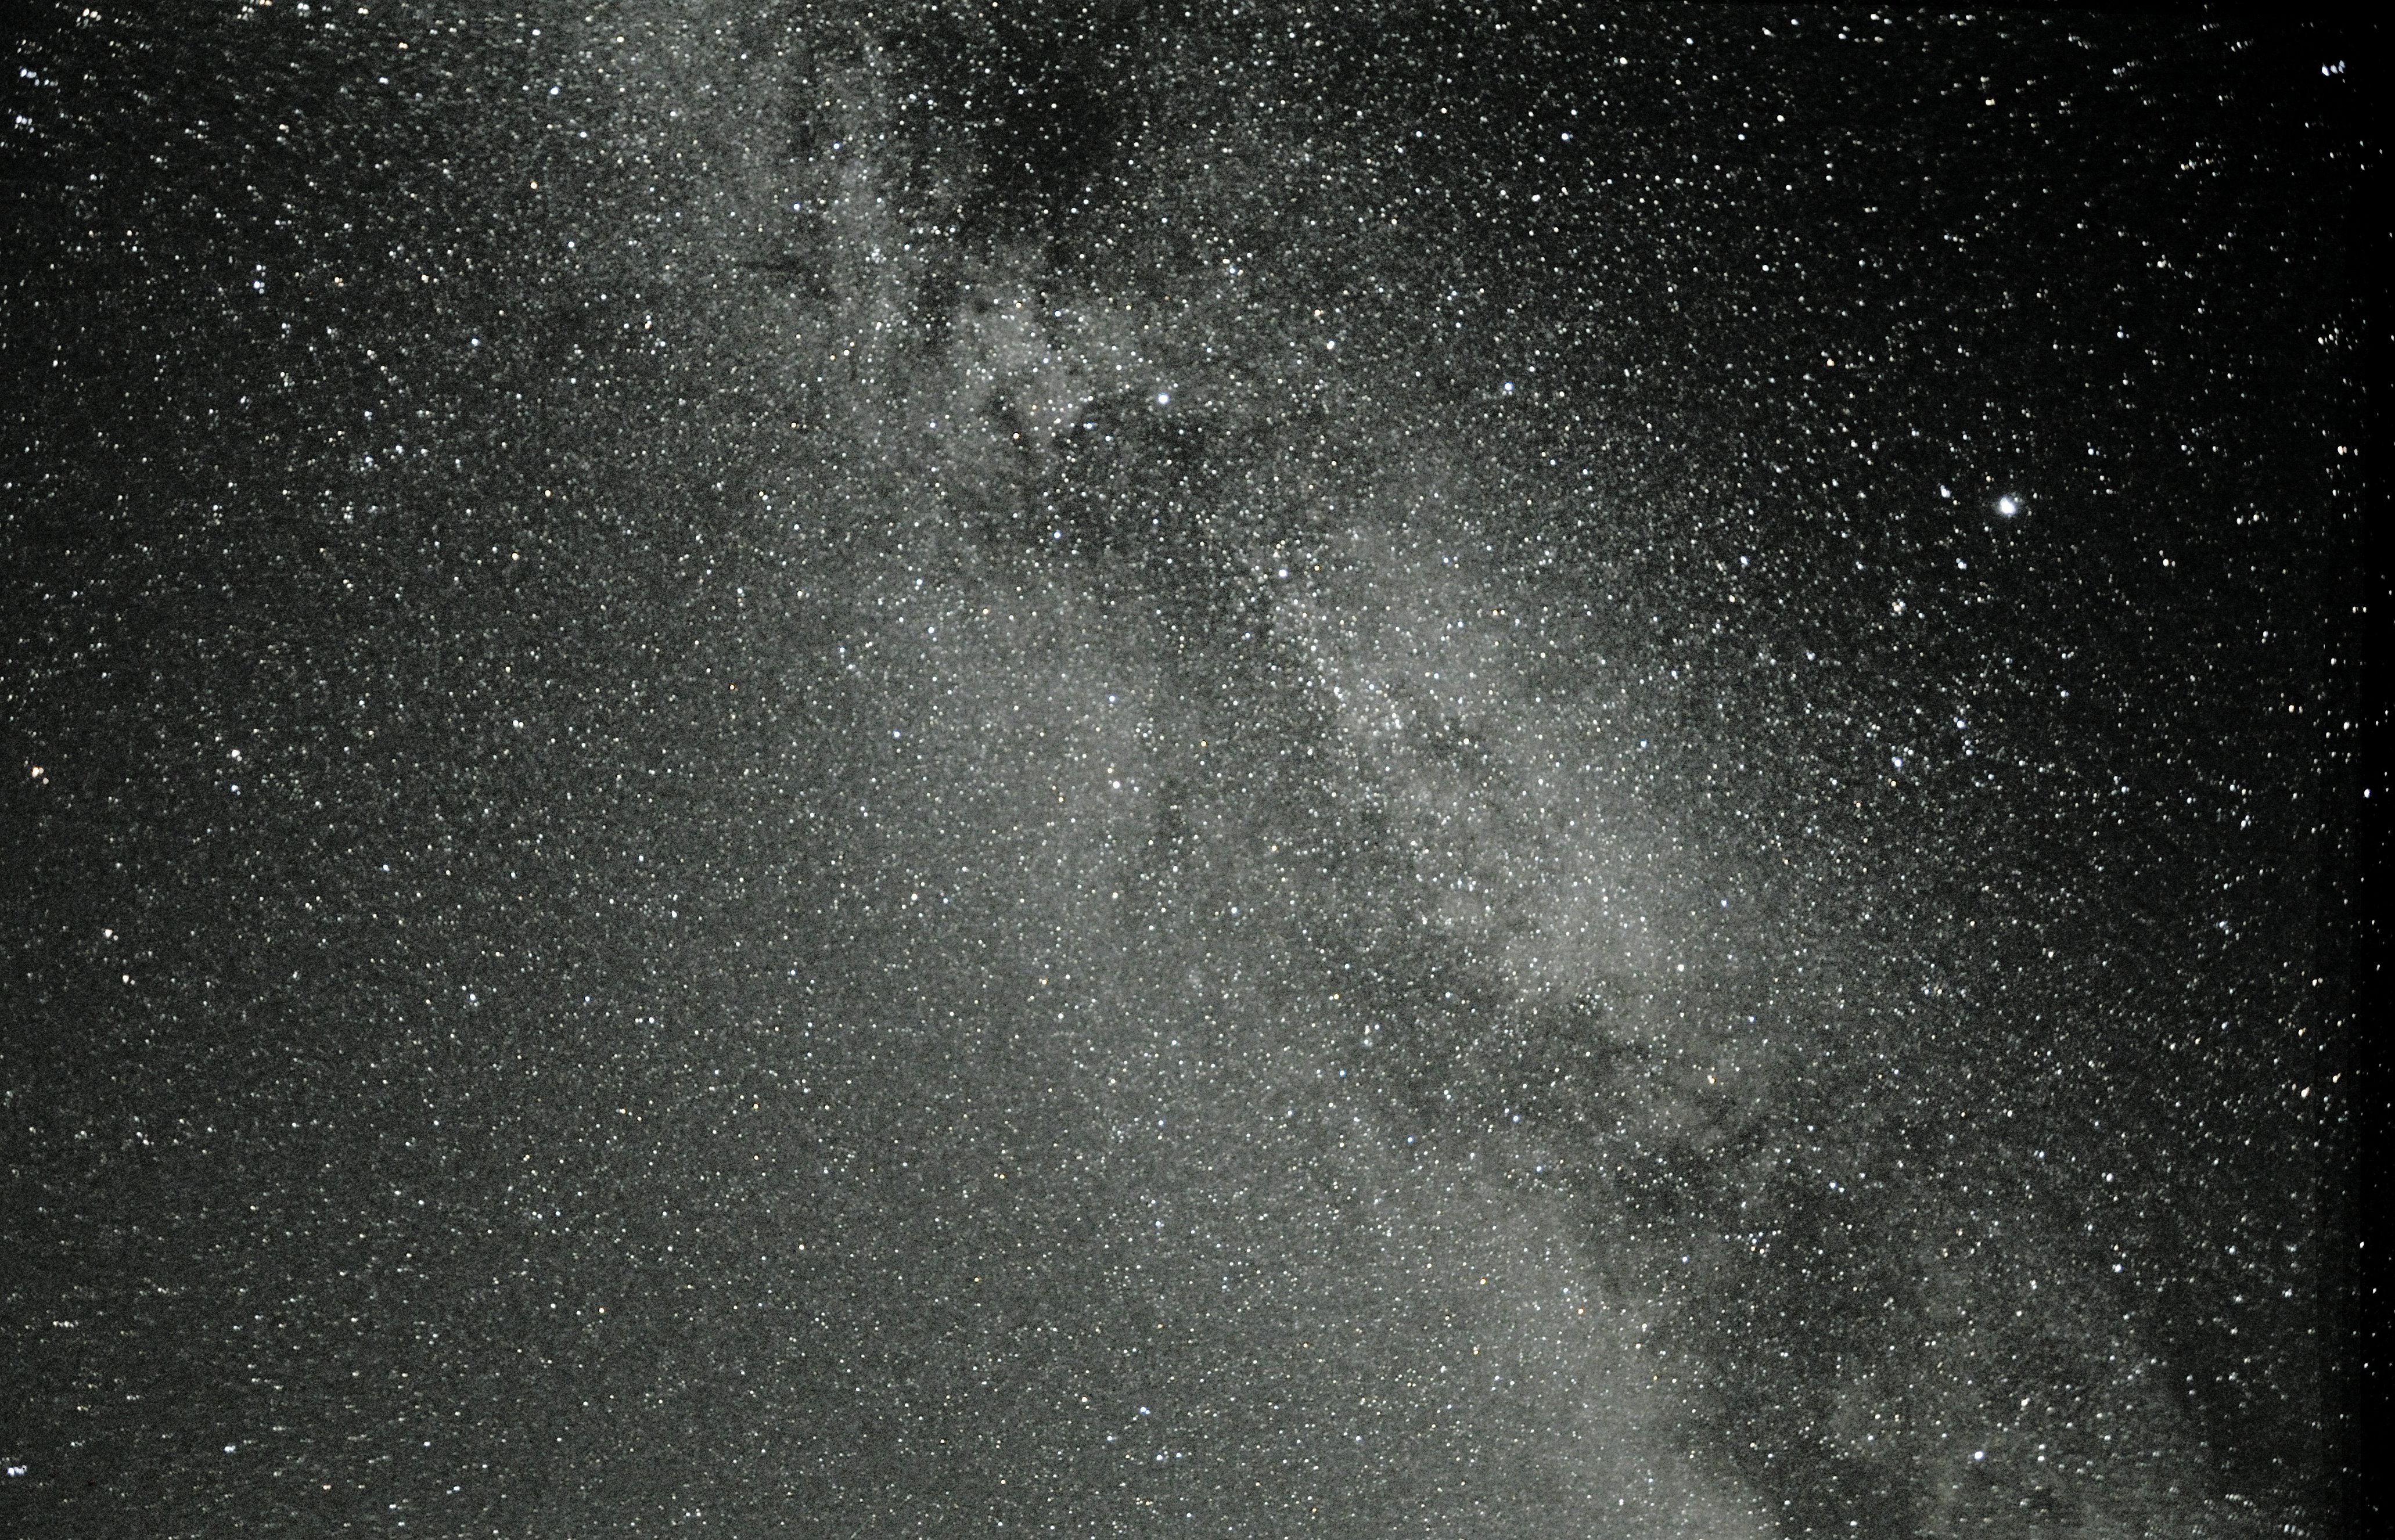 Sommermilchstraße - Region um Cygnus und Lyra am 25.07.2019 (Nikon D90 / ISO800 / Blende F/3.5 / Brennweite 18 mm / Belichtungszeit 5 Minuten (aus 10 Einzelbildern gestackt).